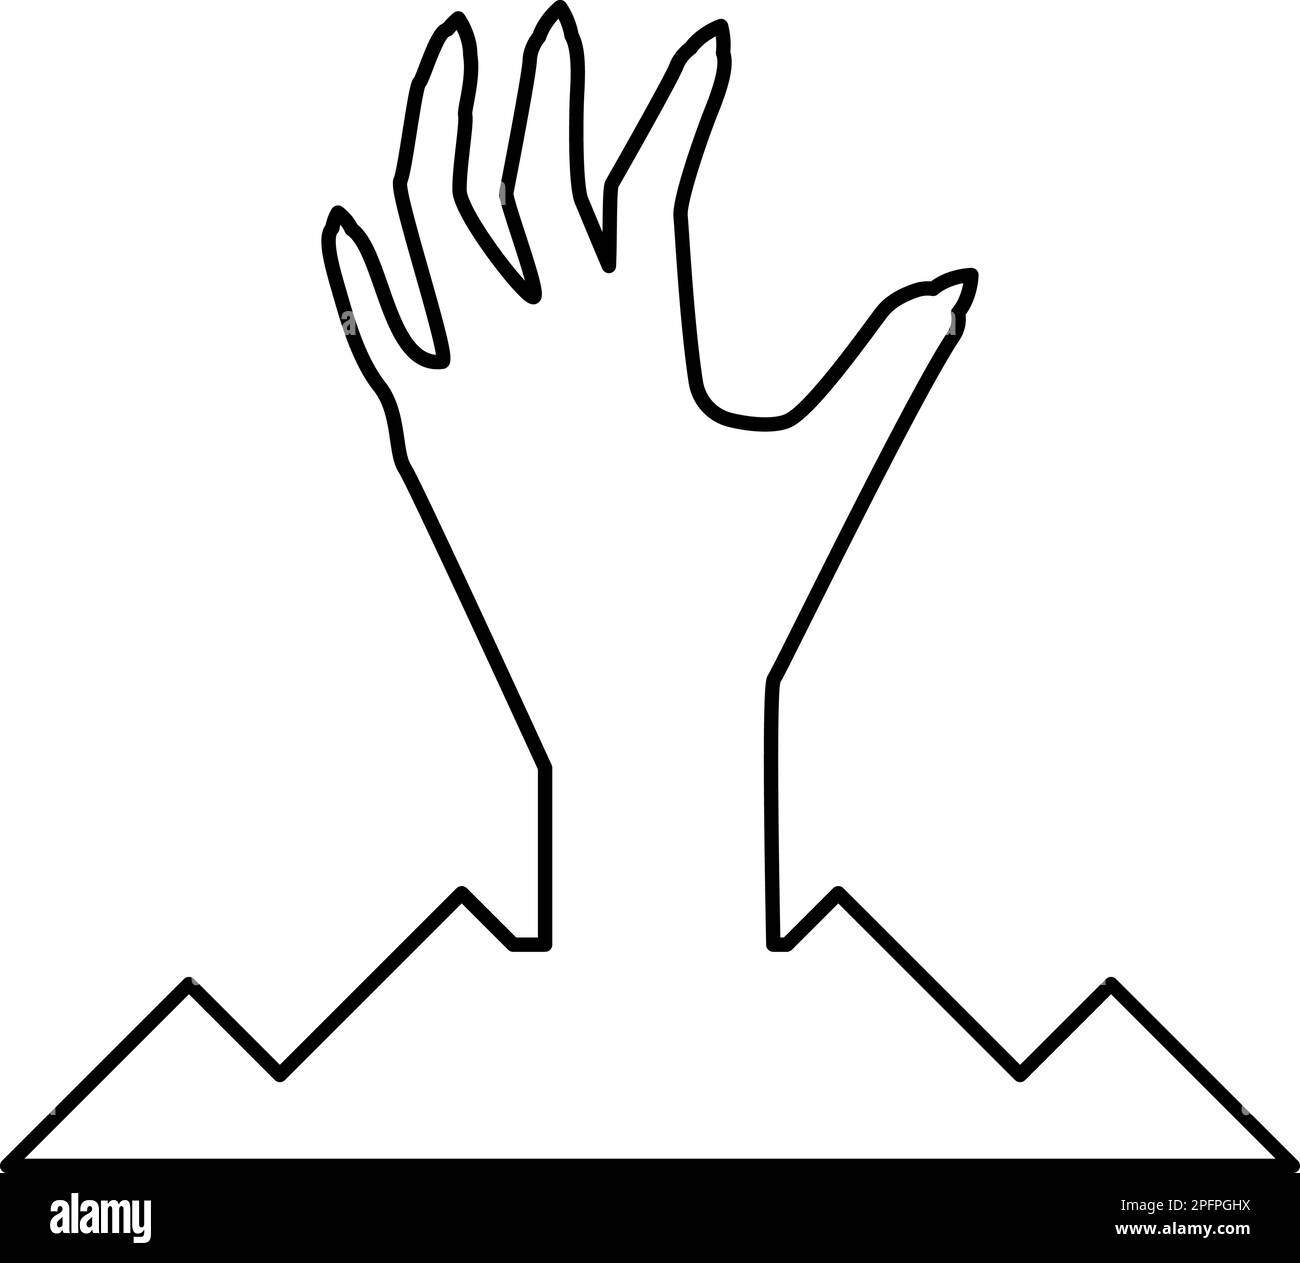 Spaventa la mano umana dal suolo silhouette uomo morto Halloween elemento decorativo zombie concetto spaky zappata unghie affilate unghie osso braccio dita uomo Illustrazione Vettoriale